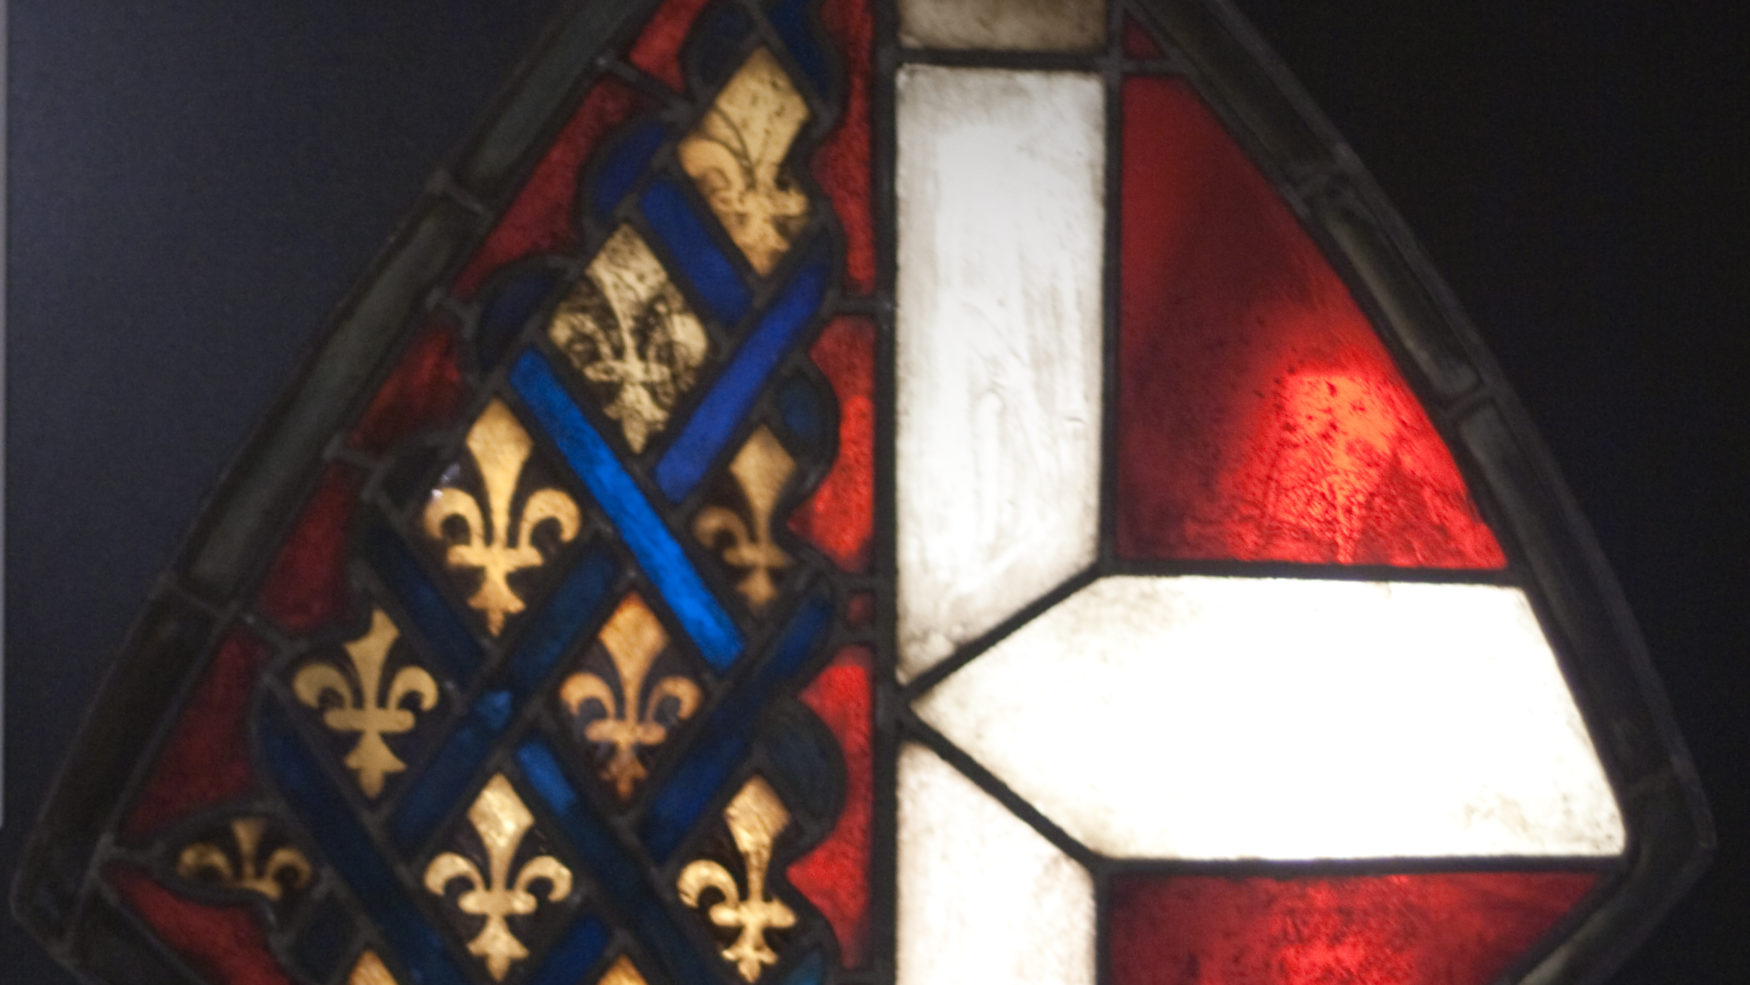 Buntglasfenster mit den Wappen des Herzogtums Berry und der Grafschaft Savoyen